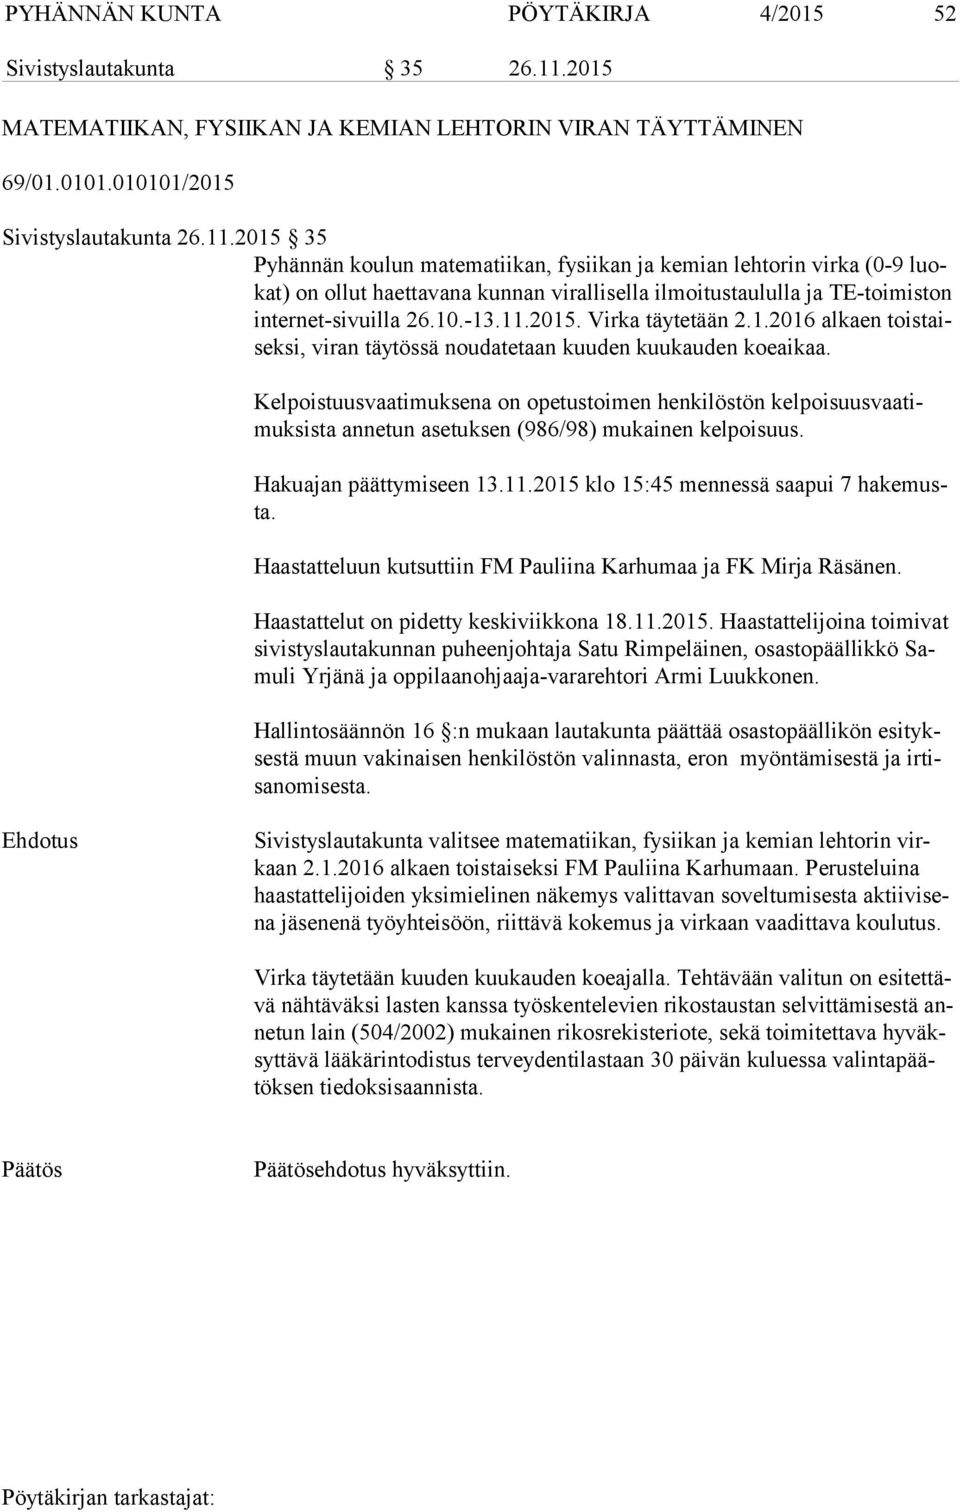 2015 35 Pyhännän koulun matematiikan, fysiikan ja kemian lehtorin virka (0-9 luokat) on ollut haettavana kunnan virallisella ilmoitustaululla ja TE-toimiston in ter net-si vuil la 26.10.-13.11.2015. Virka täytetään 2.